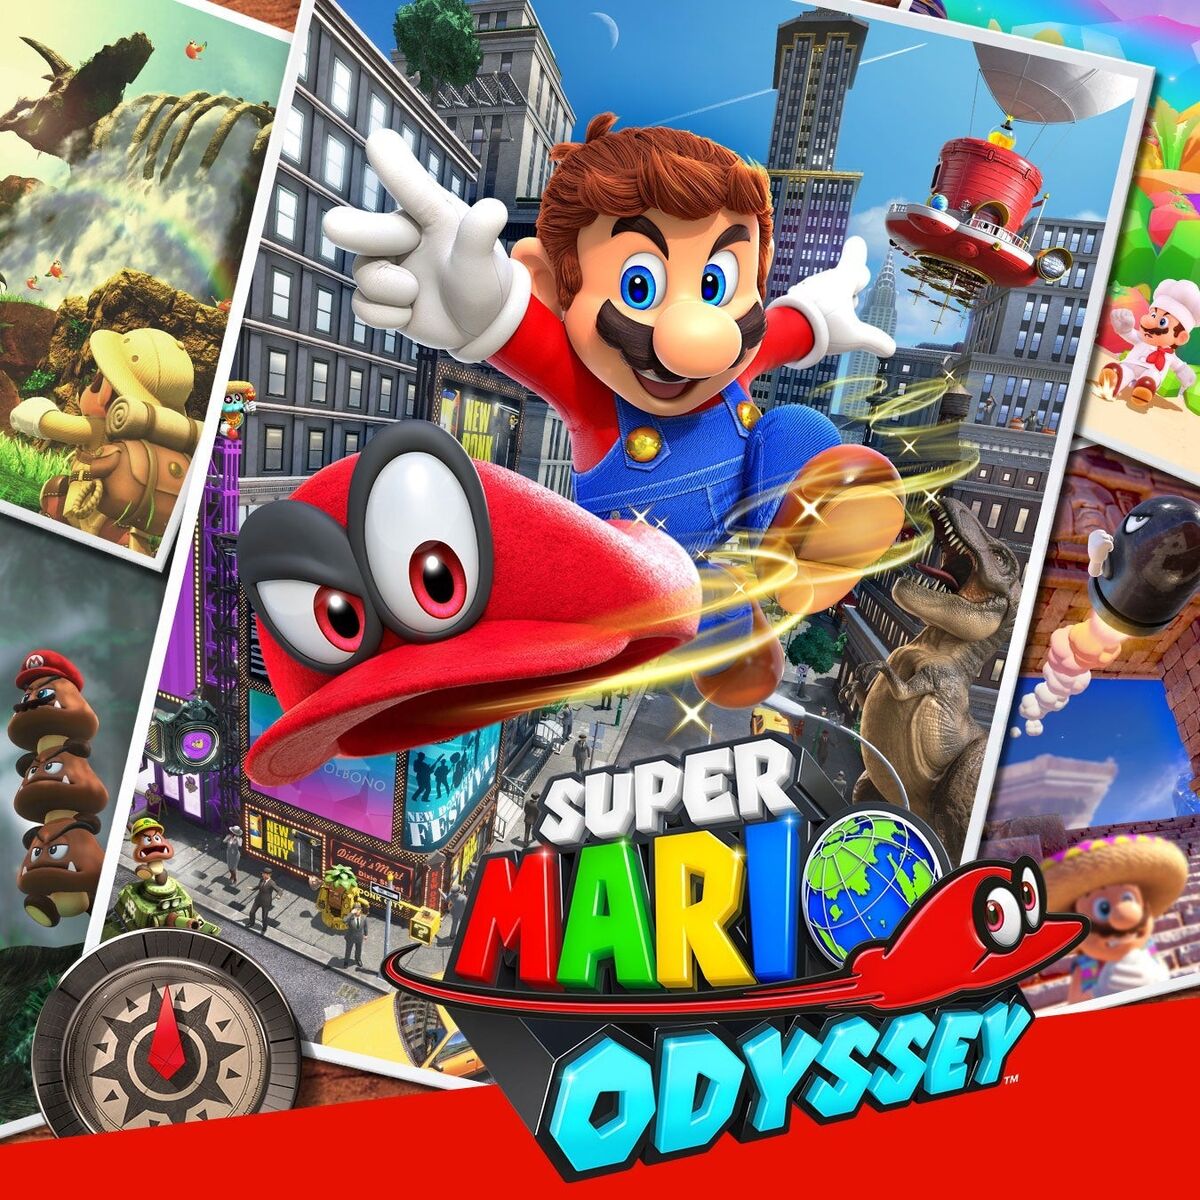 Super Mario Odyssey Fandom Wiki Vesterandfriends | 